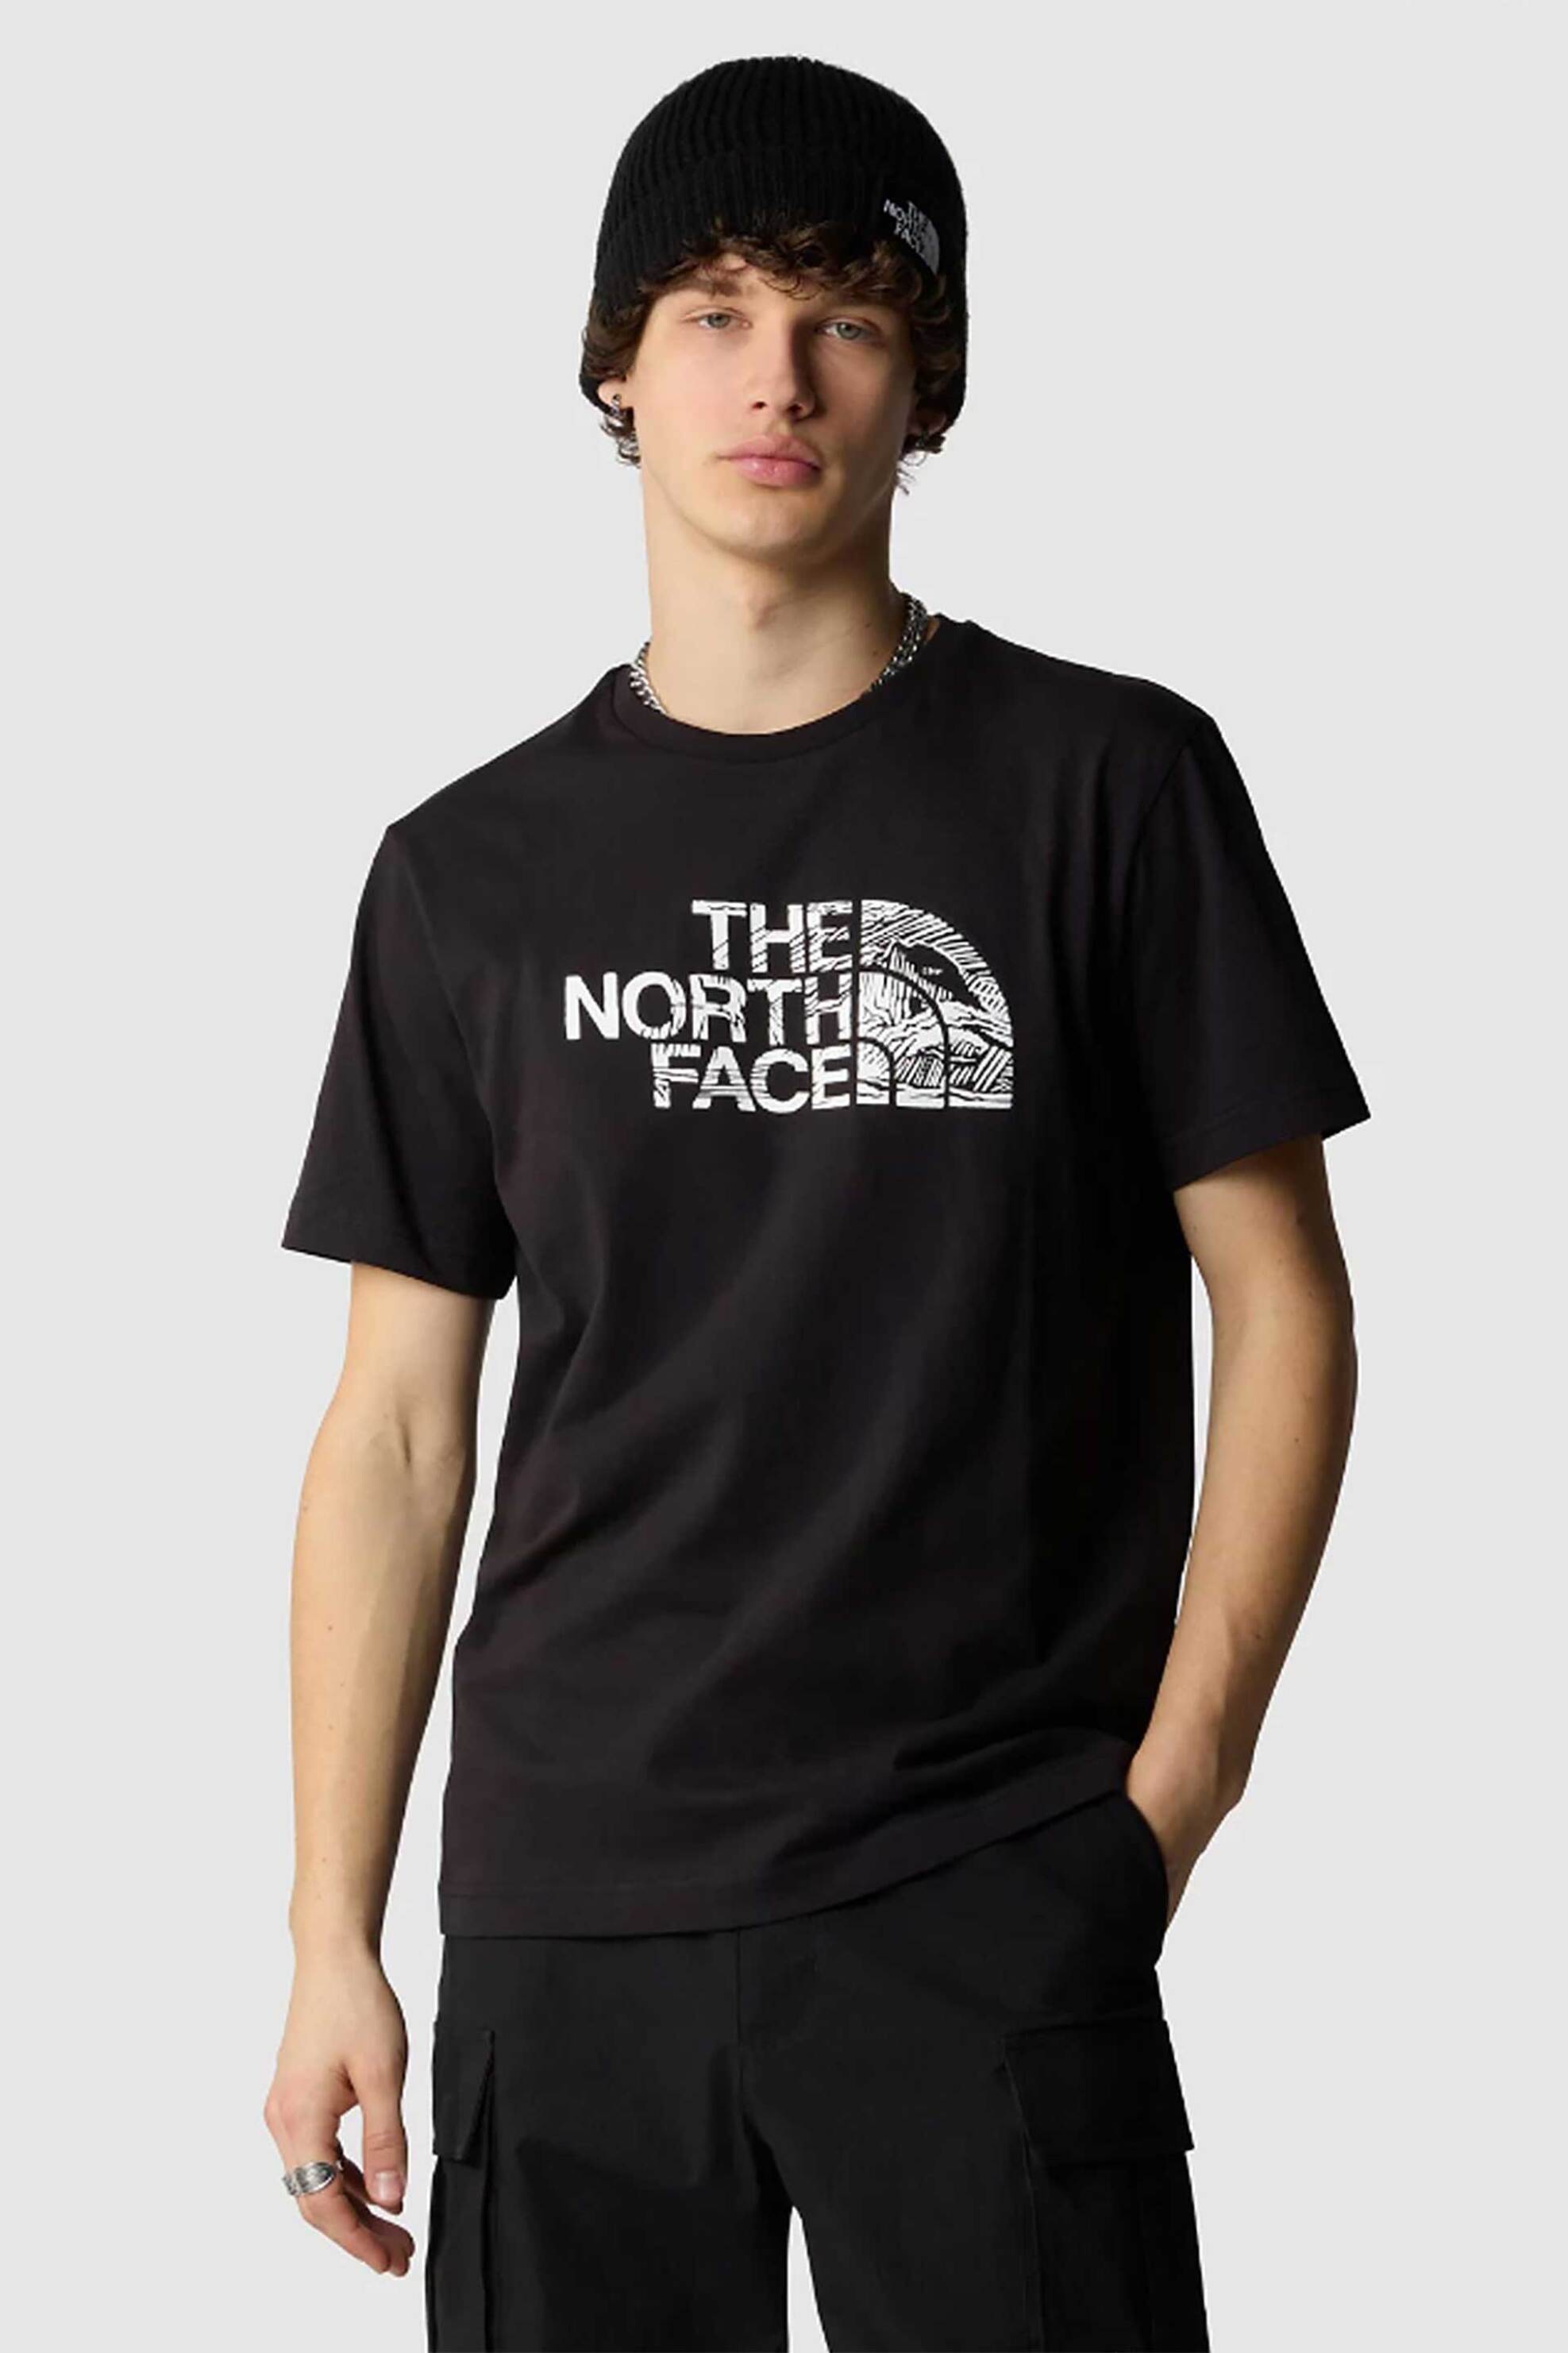 Ανδρική Μόδα > Ανδρικά Ρούχα > Ανδρικές Μπλούζες > Ανδρικά T-Shirts The North Face ανδρικό βαμβακερό T-shirt μονόχρωμο με contrast logo prints "Woodcut Dome" - NF0A87NXJK31 Μαύρο